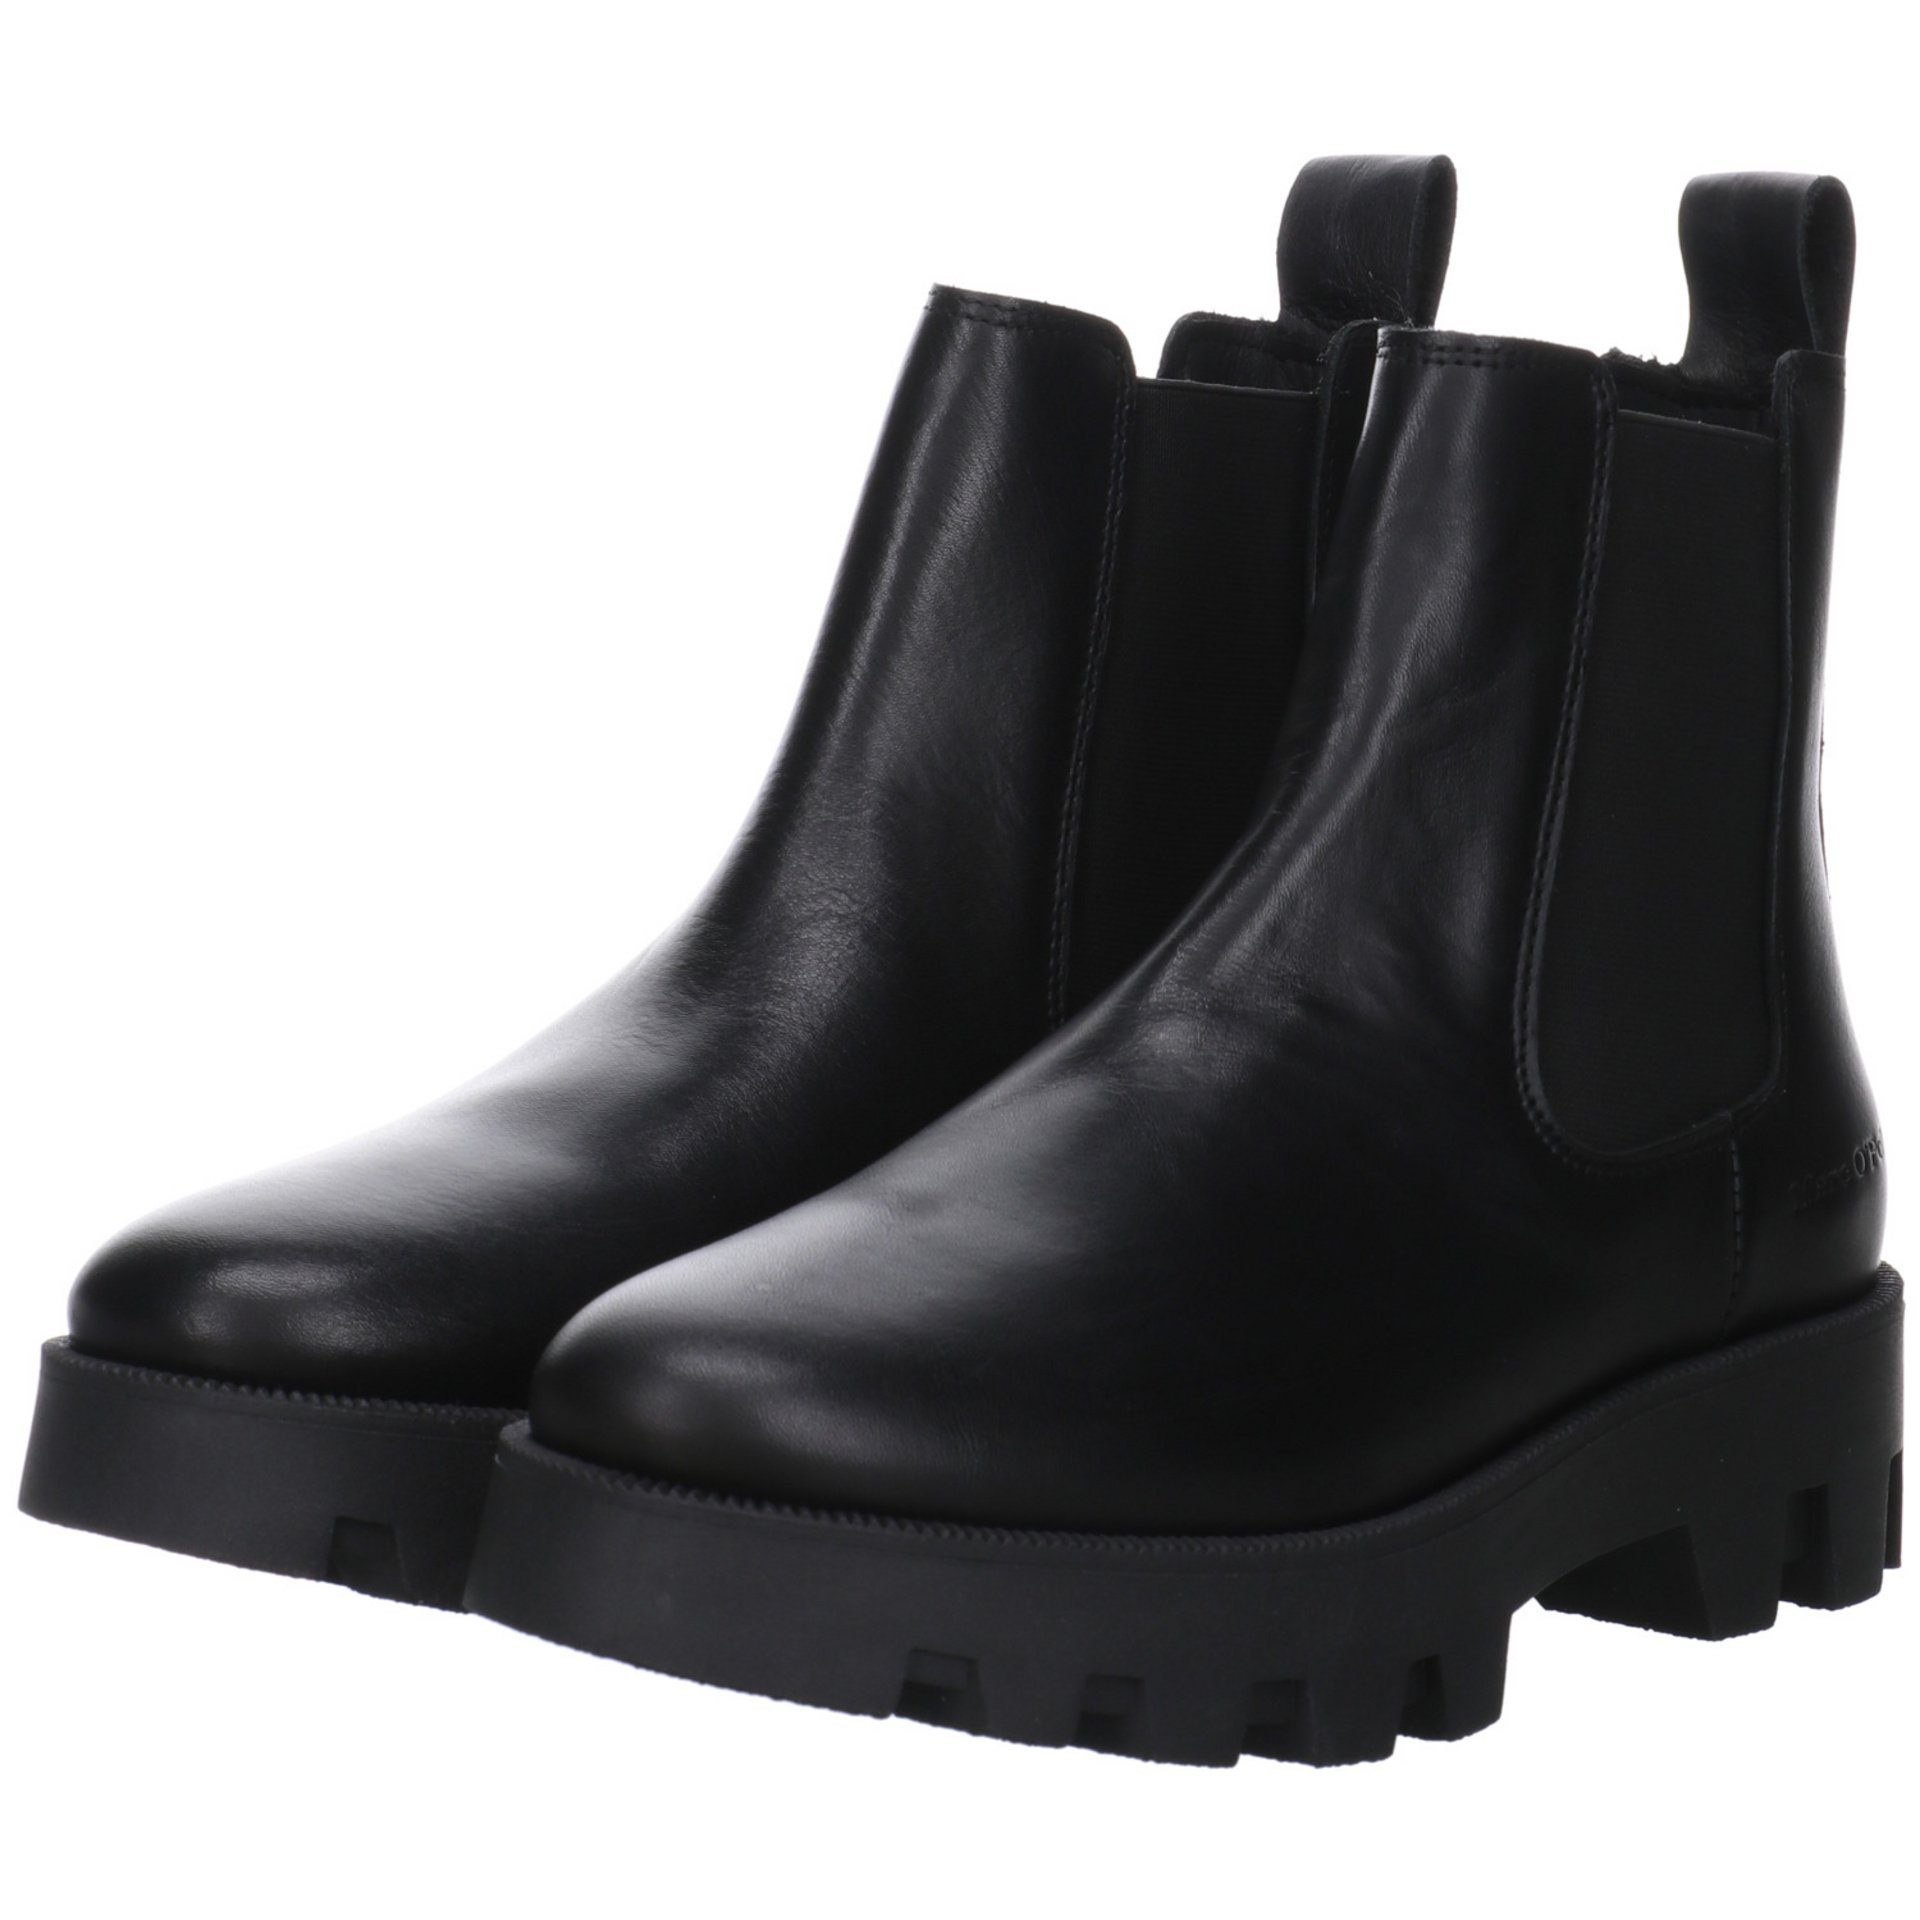 Schuhe Chelsea-Boots Leder-/Textilkombination Stiefeletten Damen O'Polo Marc Stiefelette